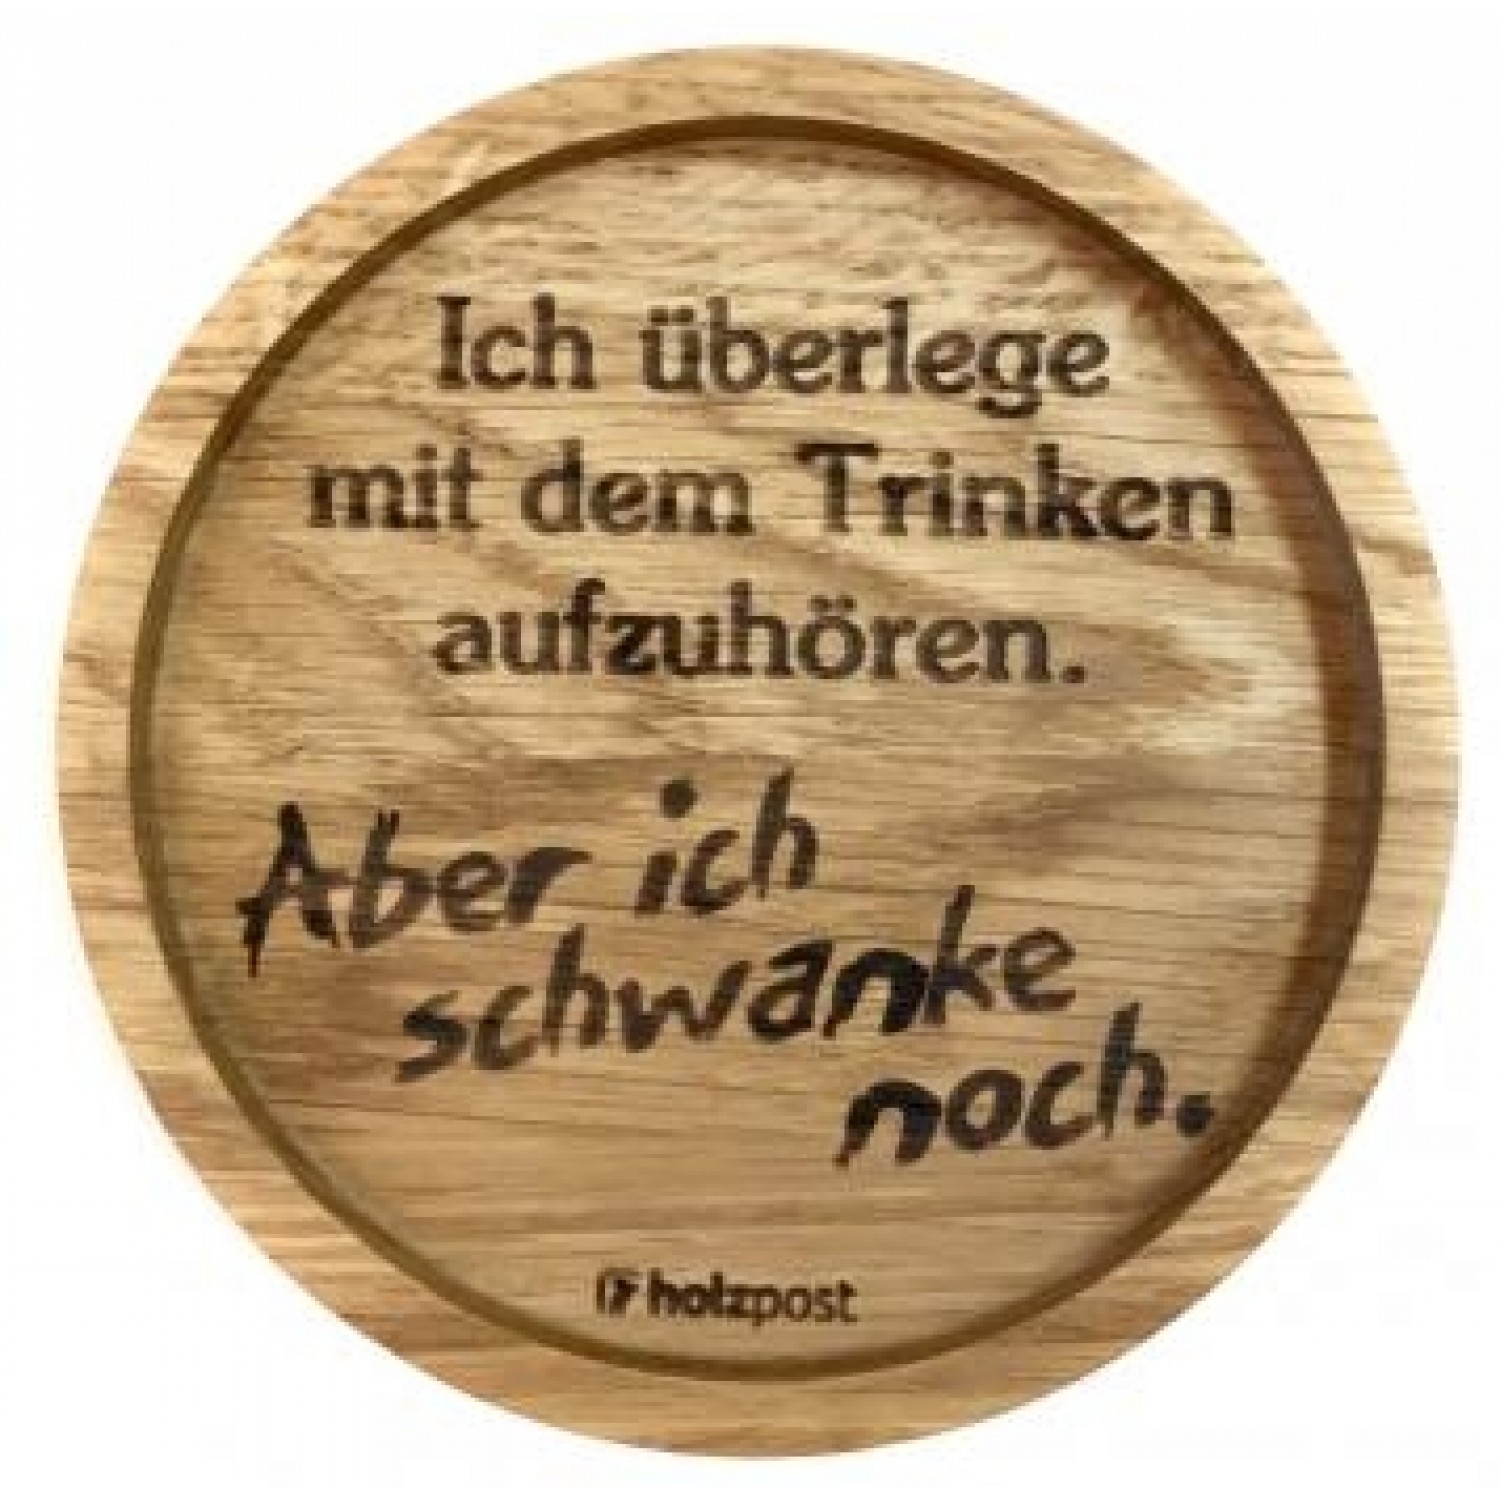 Solid Oak Wood Coaster 'Sway' German toast » holzpost